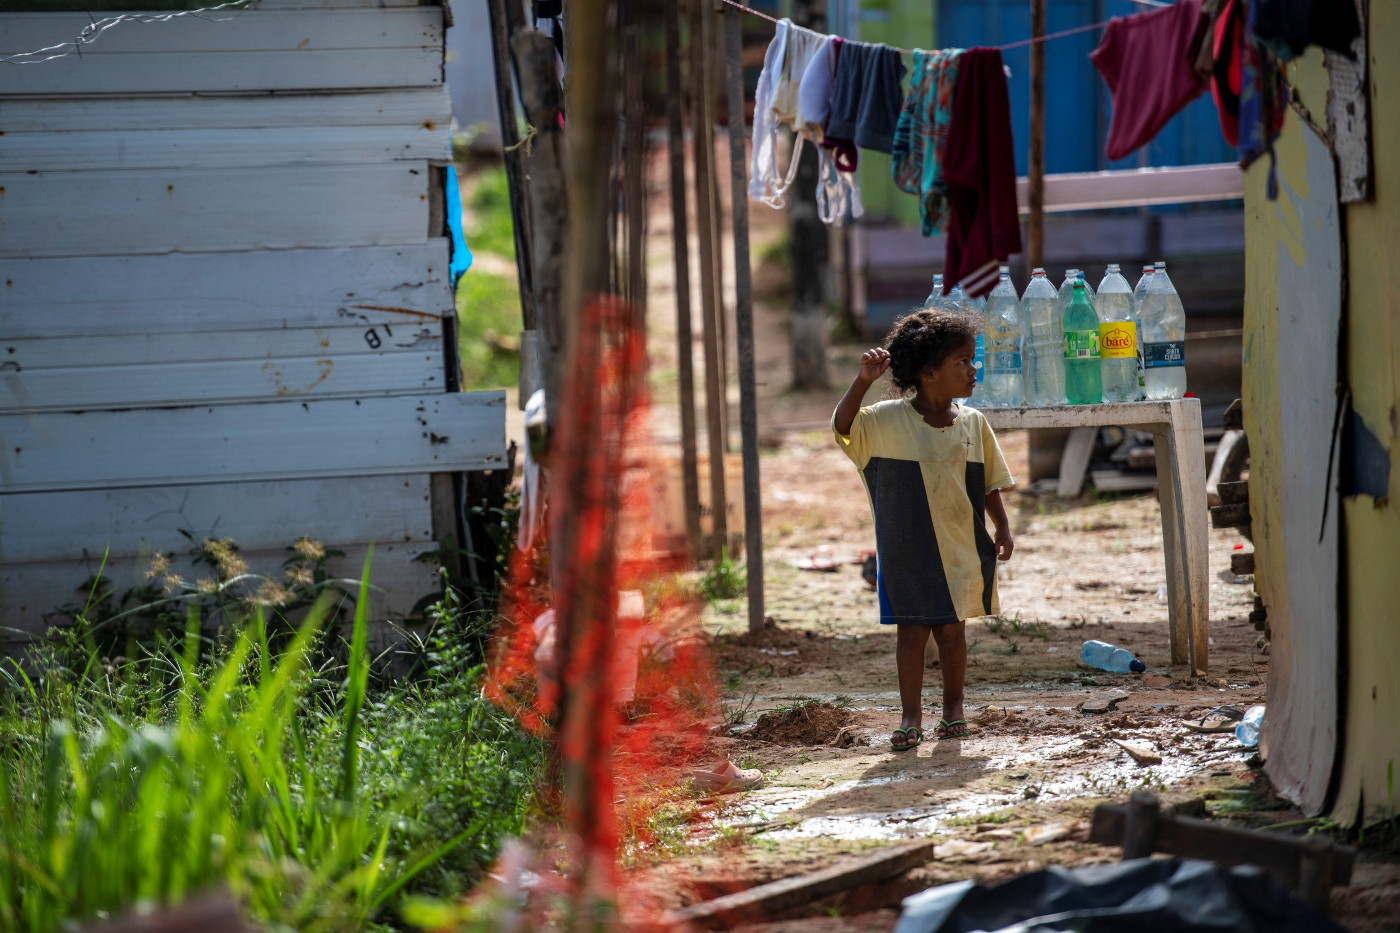 Venezolanisches Flüchtlingskind in einem Armenviertel am Rande der Amazonas-Metropole Manaus in Brasilien. Foto: Adveniat/Florian Kopp